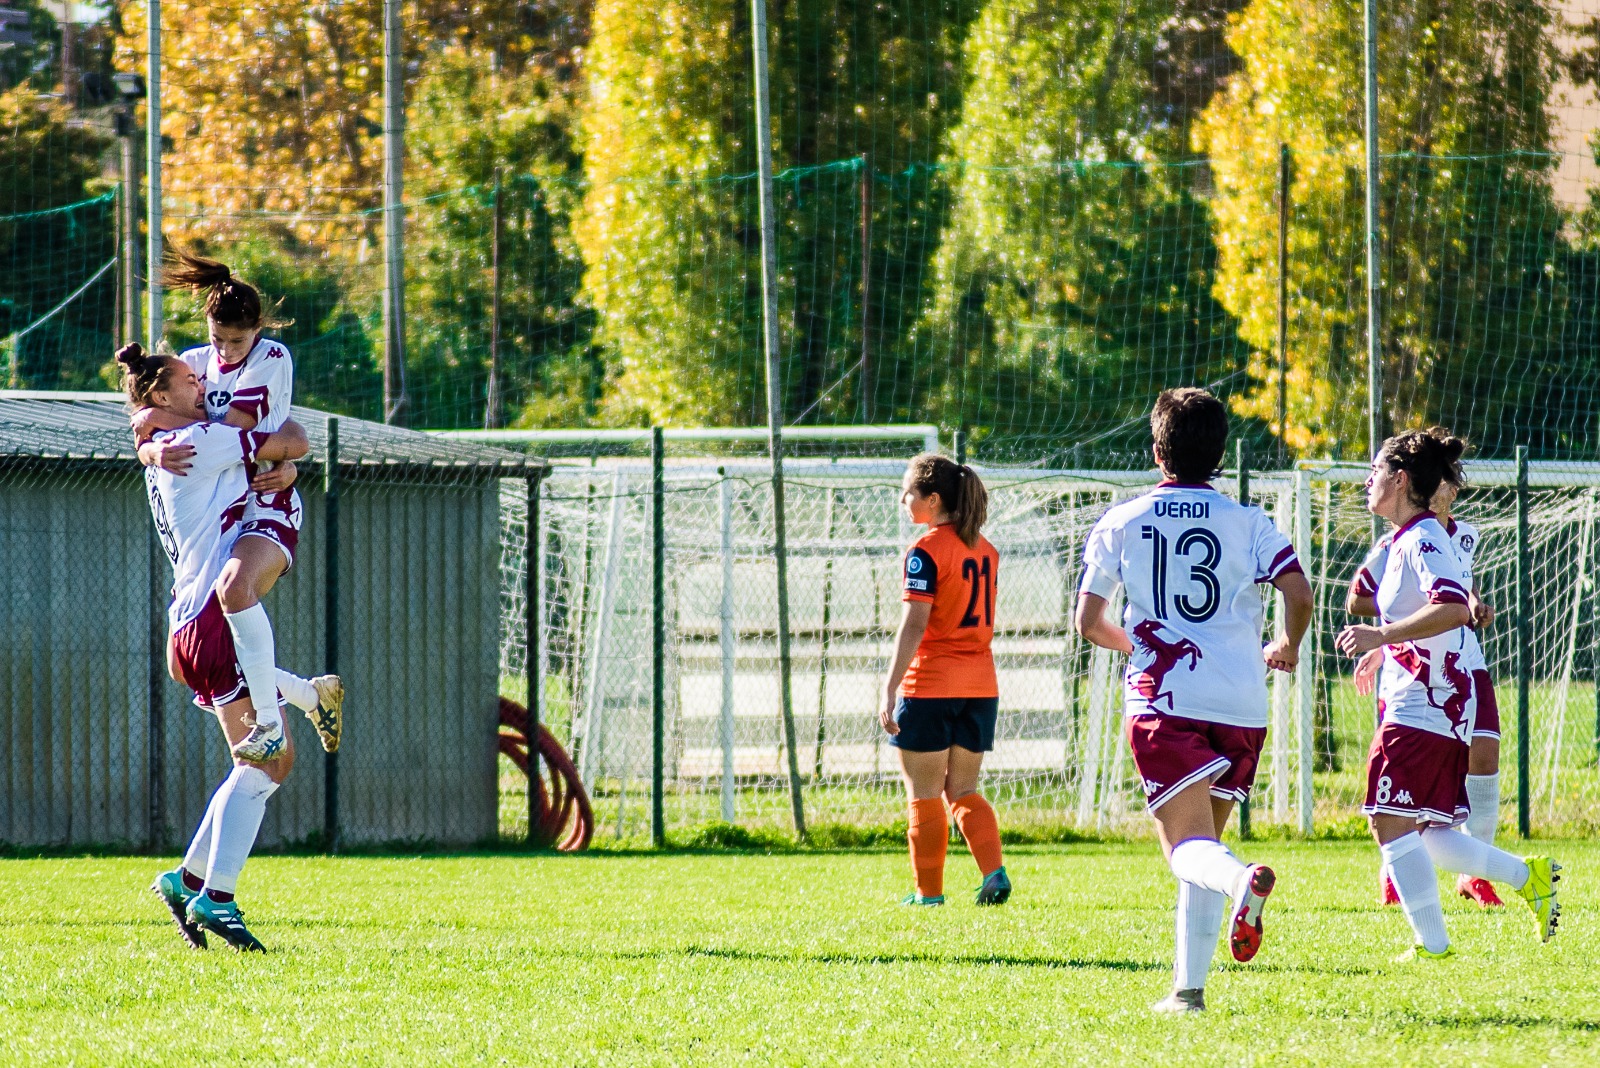 ACF Arezzo – CF Pistoiese : 6-2. Le ragazze amaranto ottengono la seconda vittoria in campionato